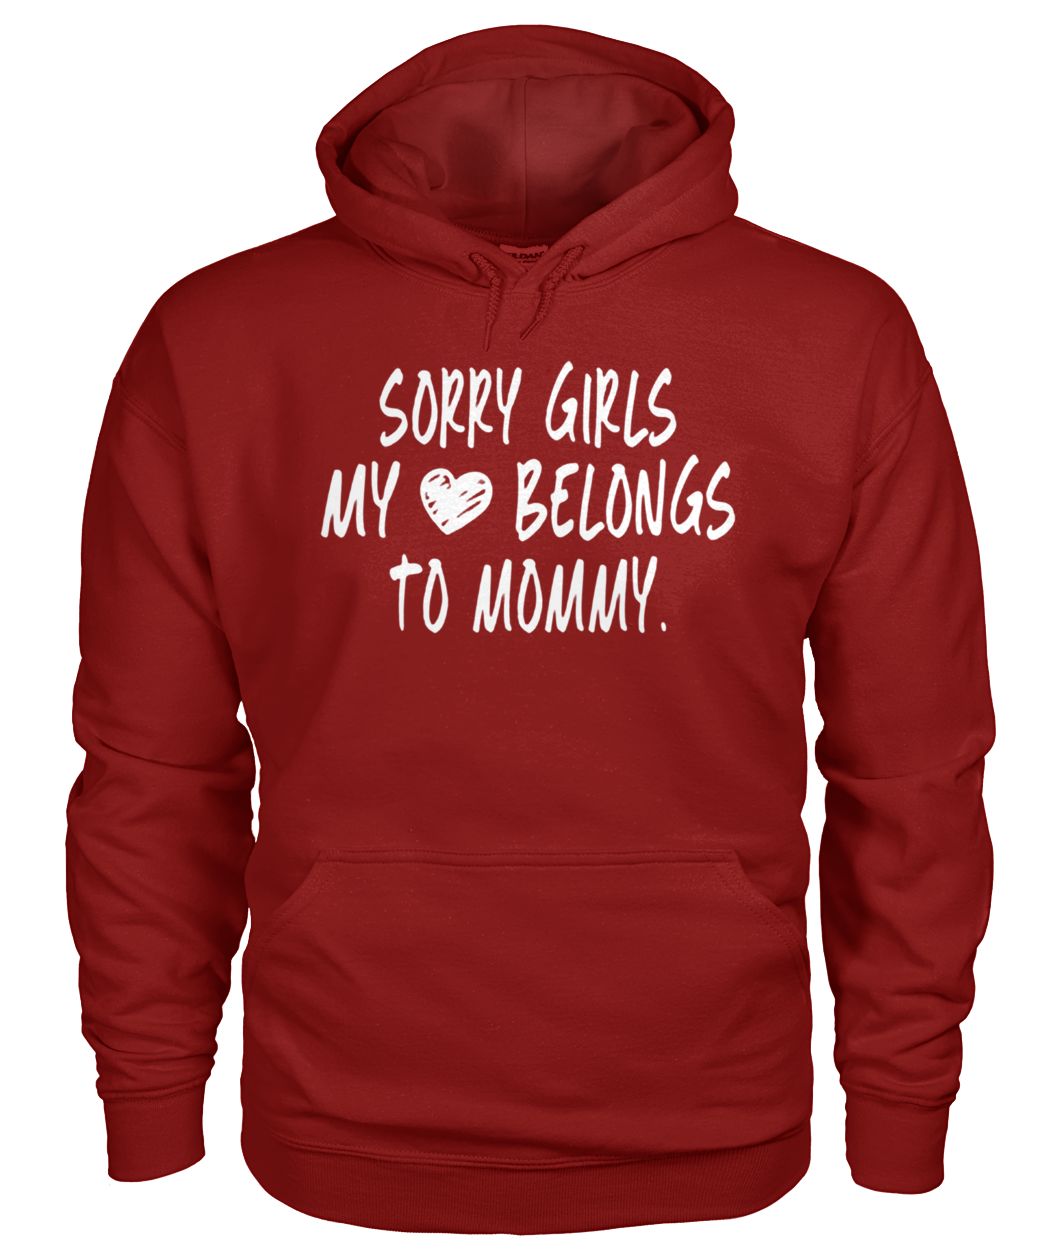 Sorry girls my heart belongs to my mommy gildan hoodie